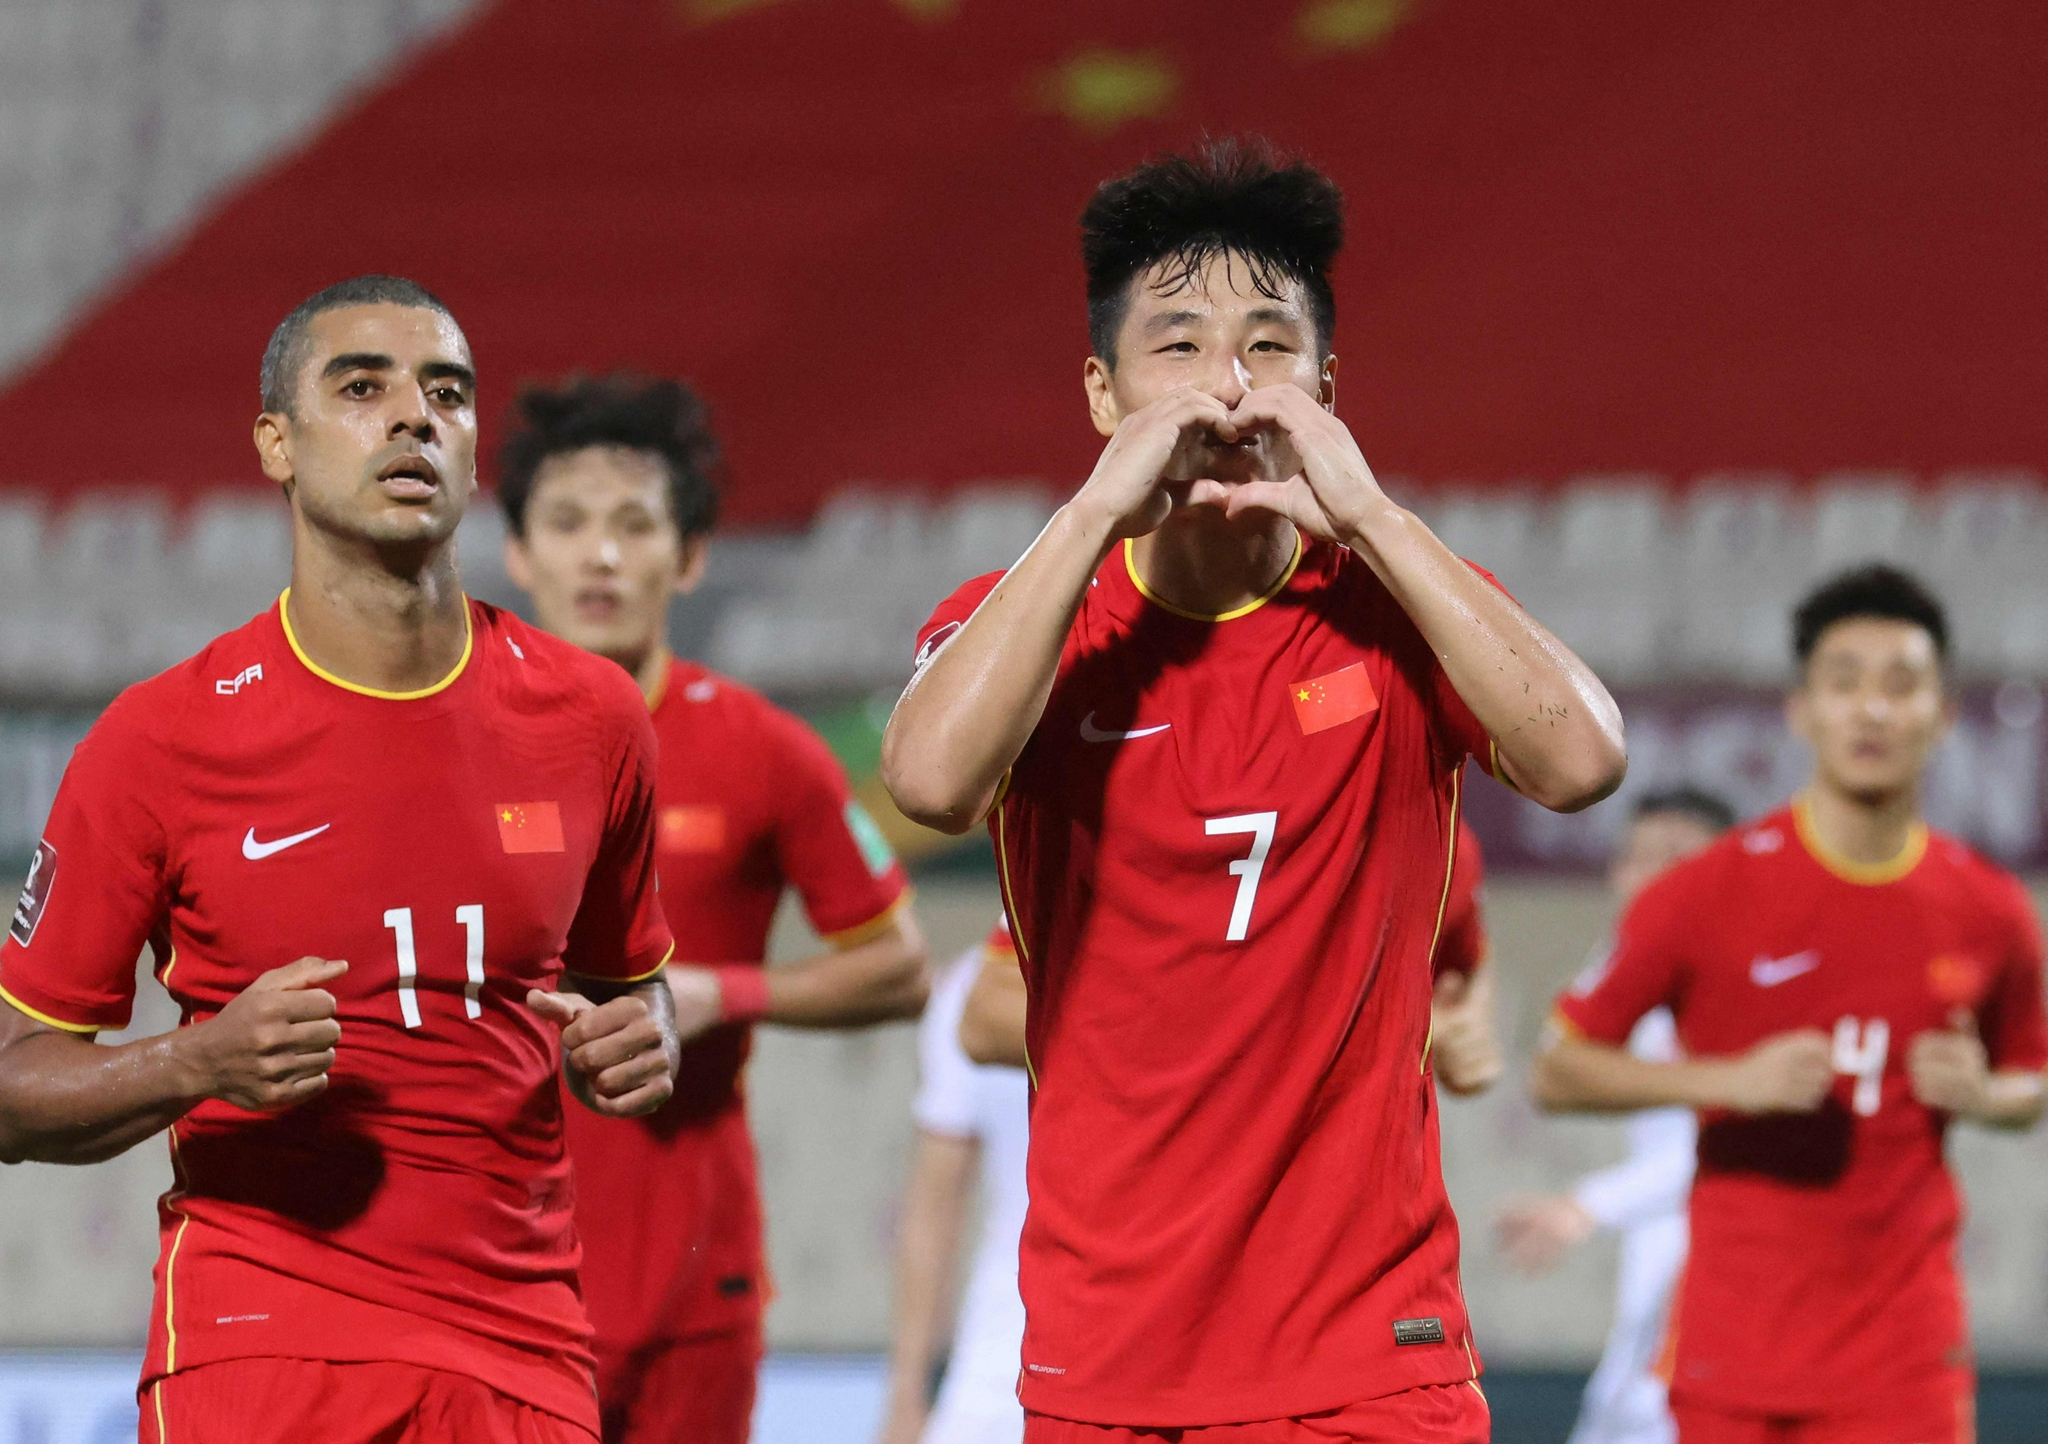 体育发展规划》的通知,内文提到了有关中国足球的一些改革方向与目标